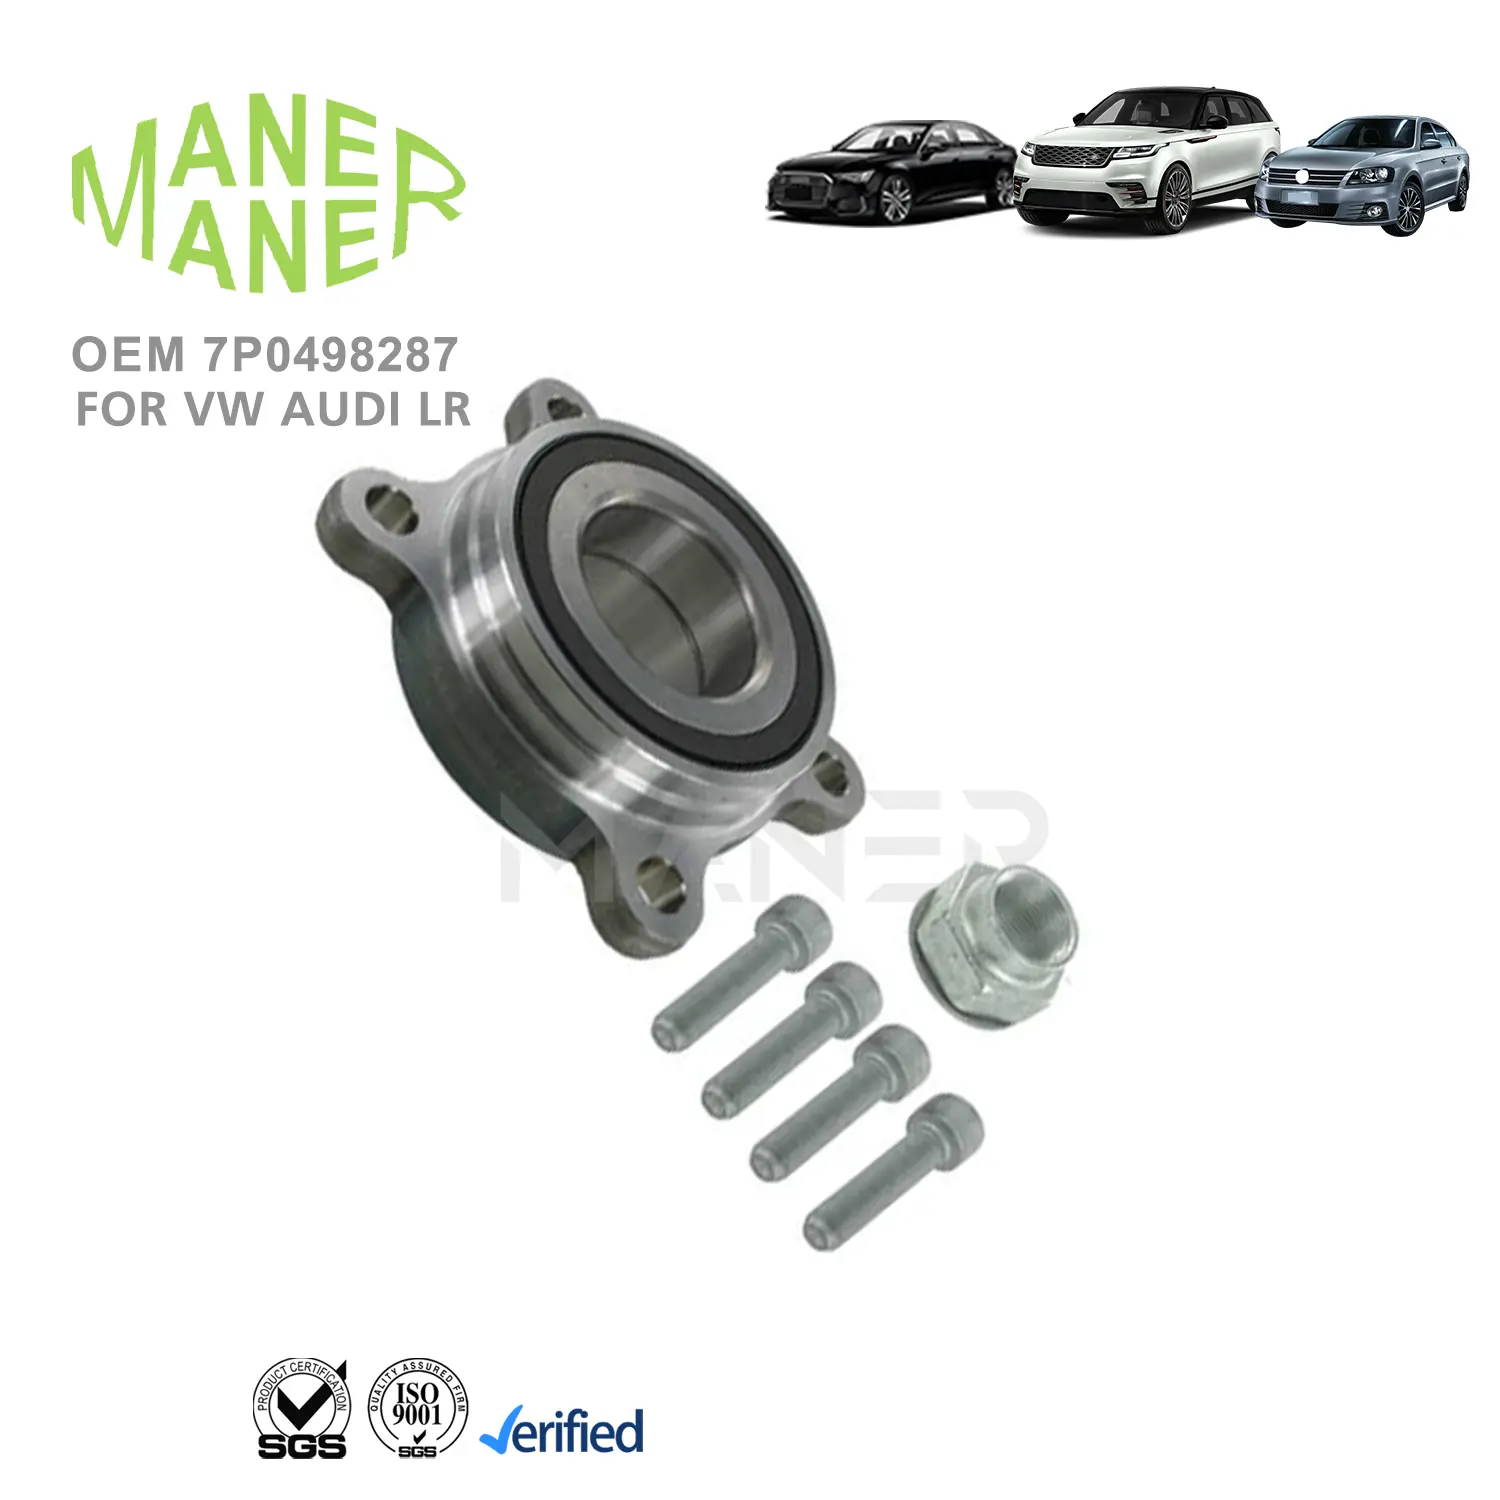 MANER 7P0498287 ऑटो इंजन प्रणाली सुरक्षित और स्थिरता स्थिर पहिया हब असर विधानसभा किट VW Touareg के लिए सबसे अच्छी सेवा